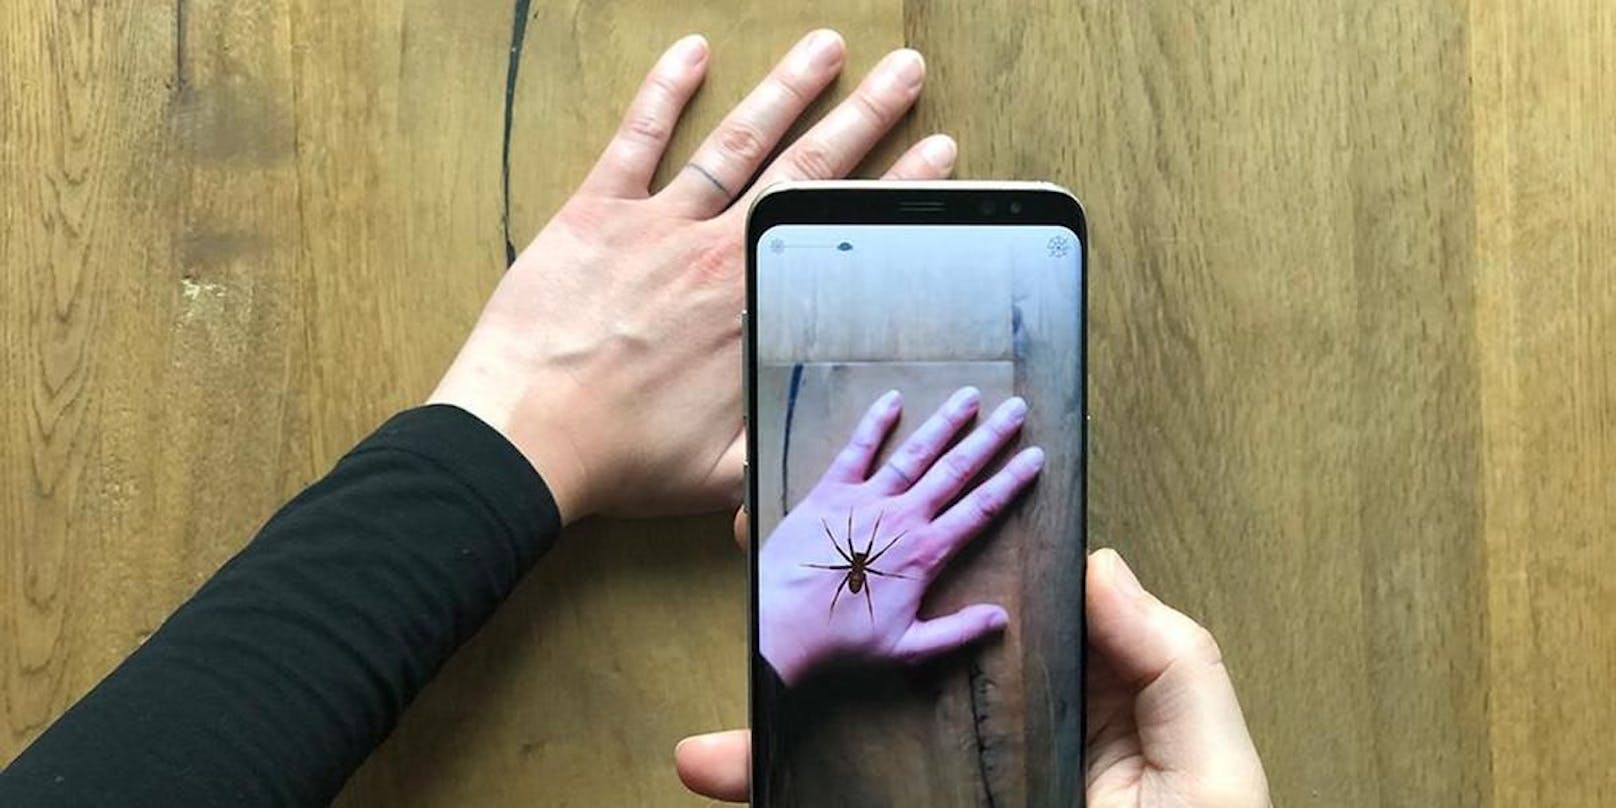 Sie setzt virtuelle Spinnen mit Hilfe der Handy-Kamera in echte Umgebungen hinein.